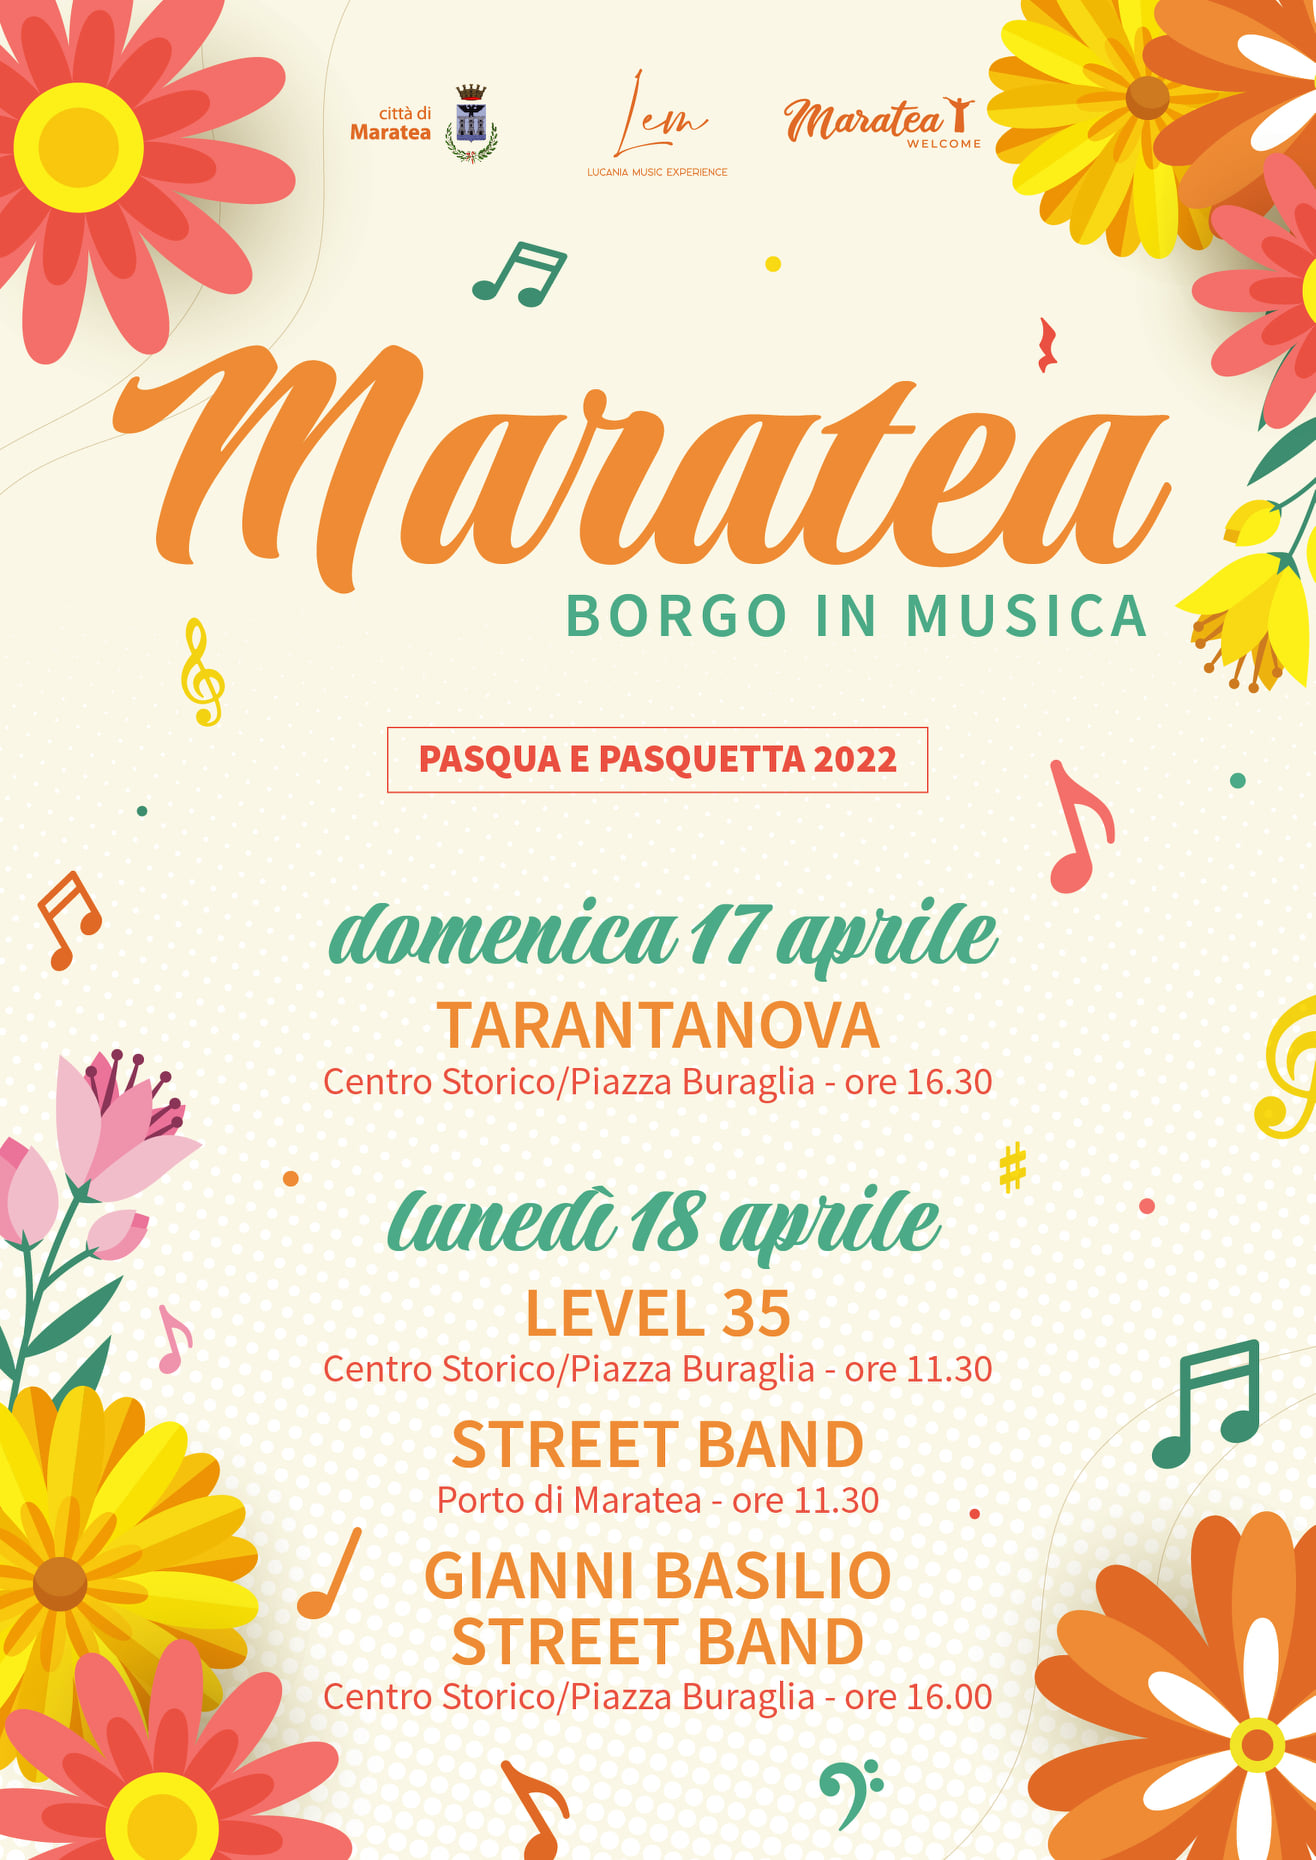 Pasqua e Pasquetta è in musica nel borgo di Maratea